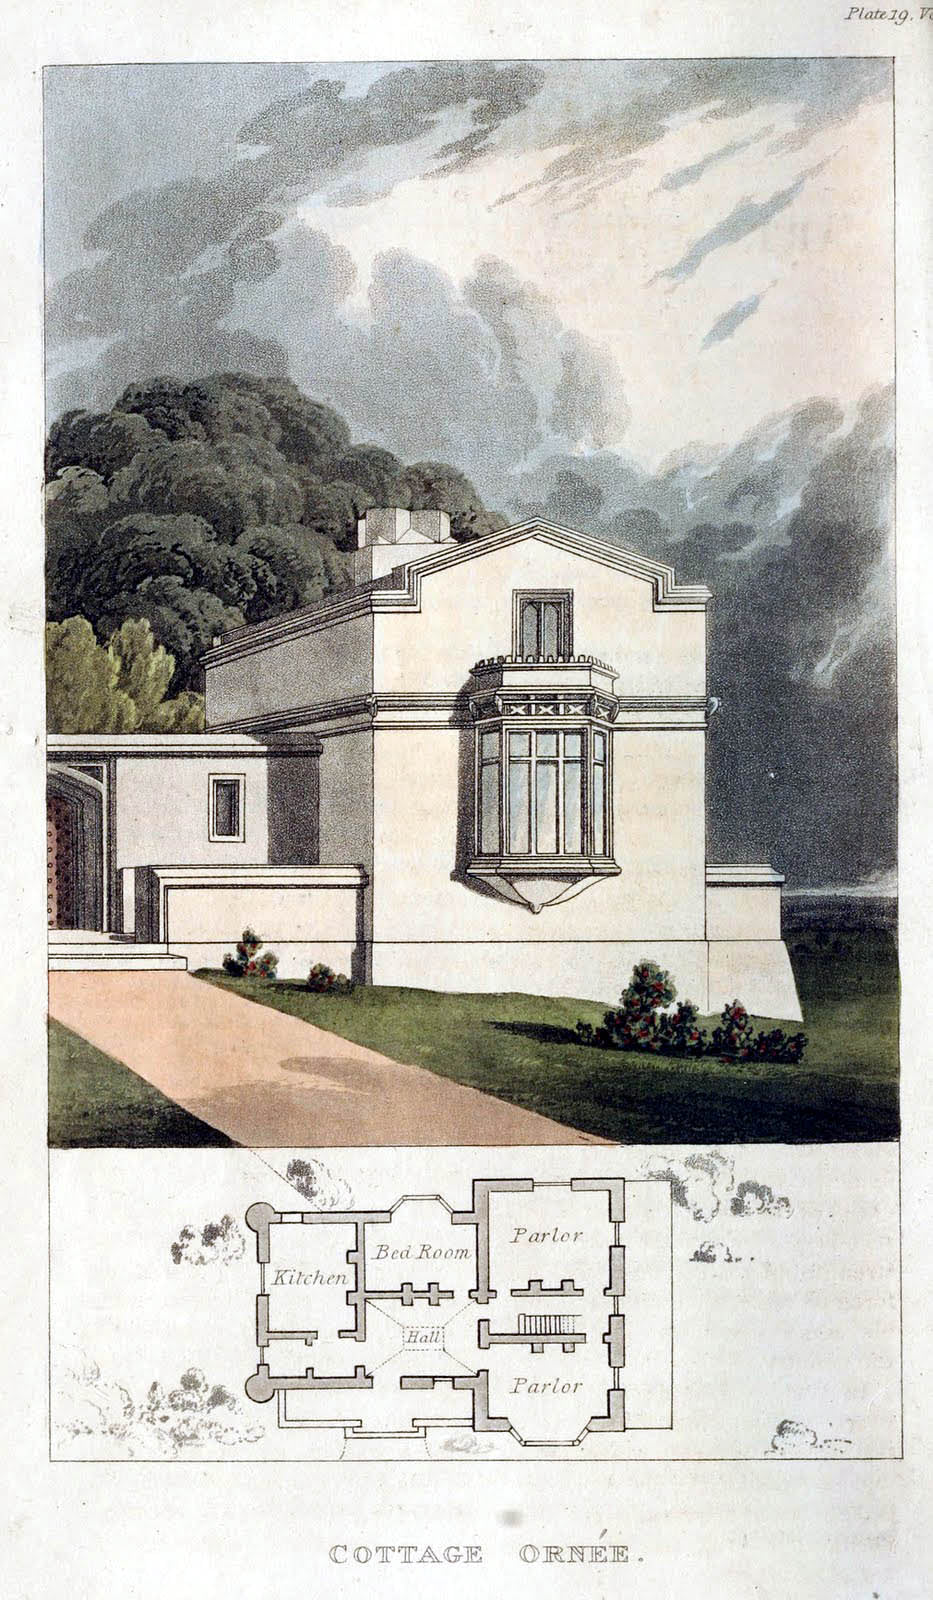 Dépôt d’Ackermann - 1816 Cottage Ornee plaque 19